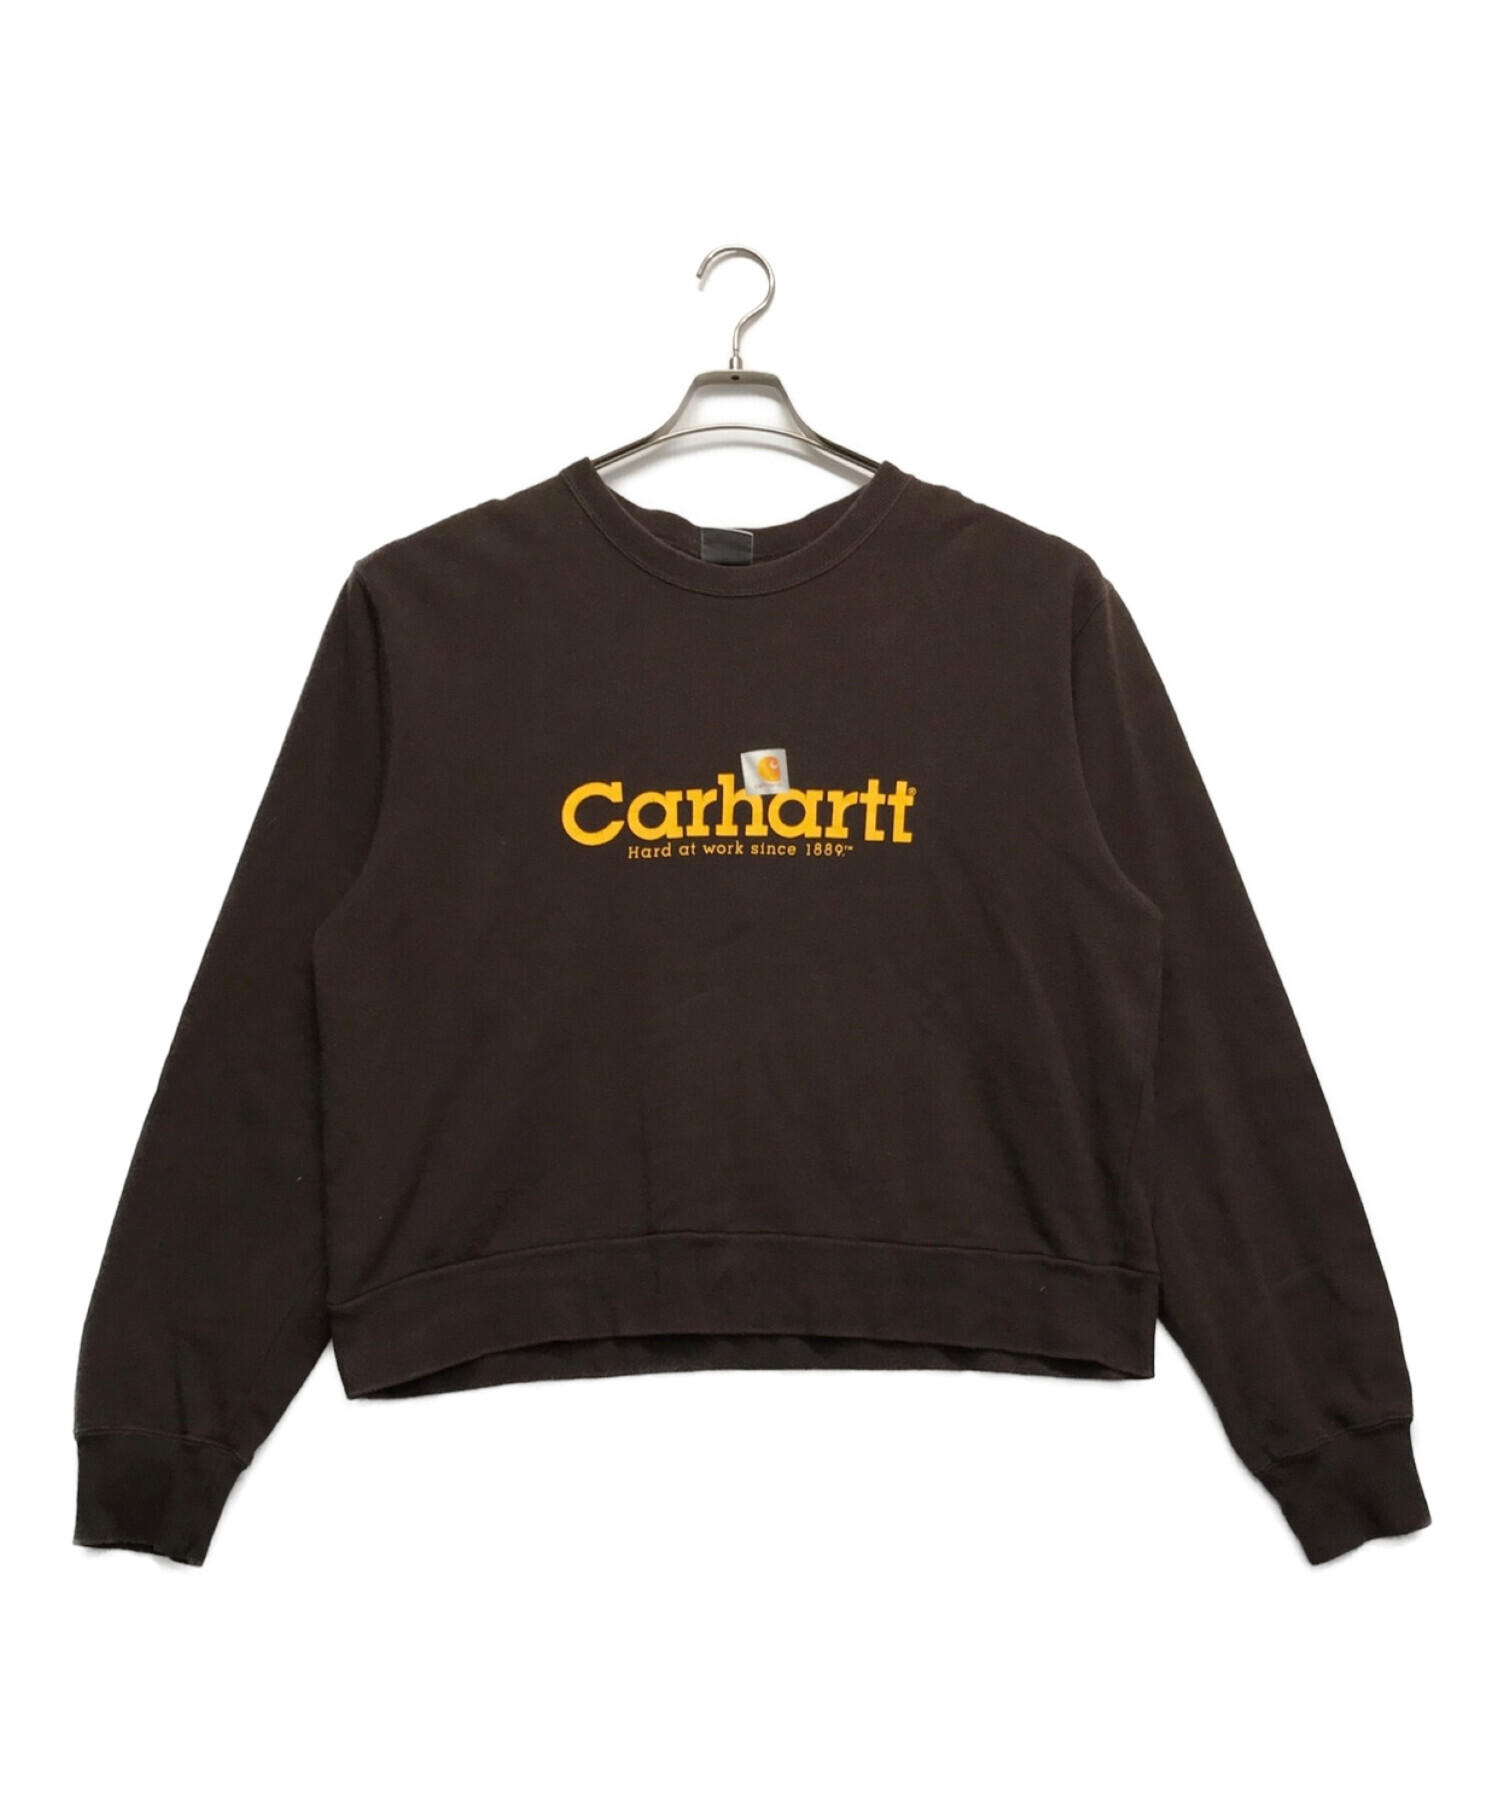 CarHartt (カーハート) プリントスウェット ブラウン サイズ:XL